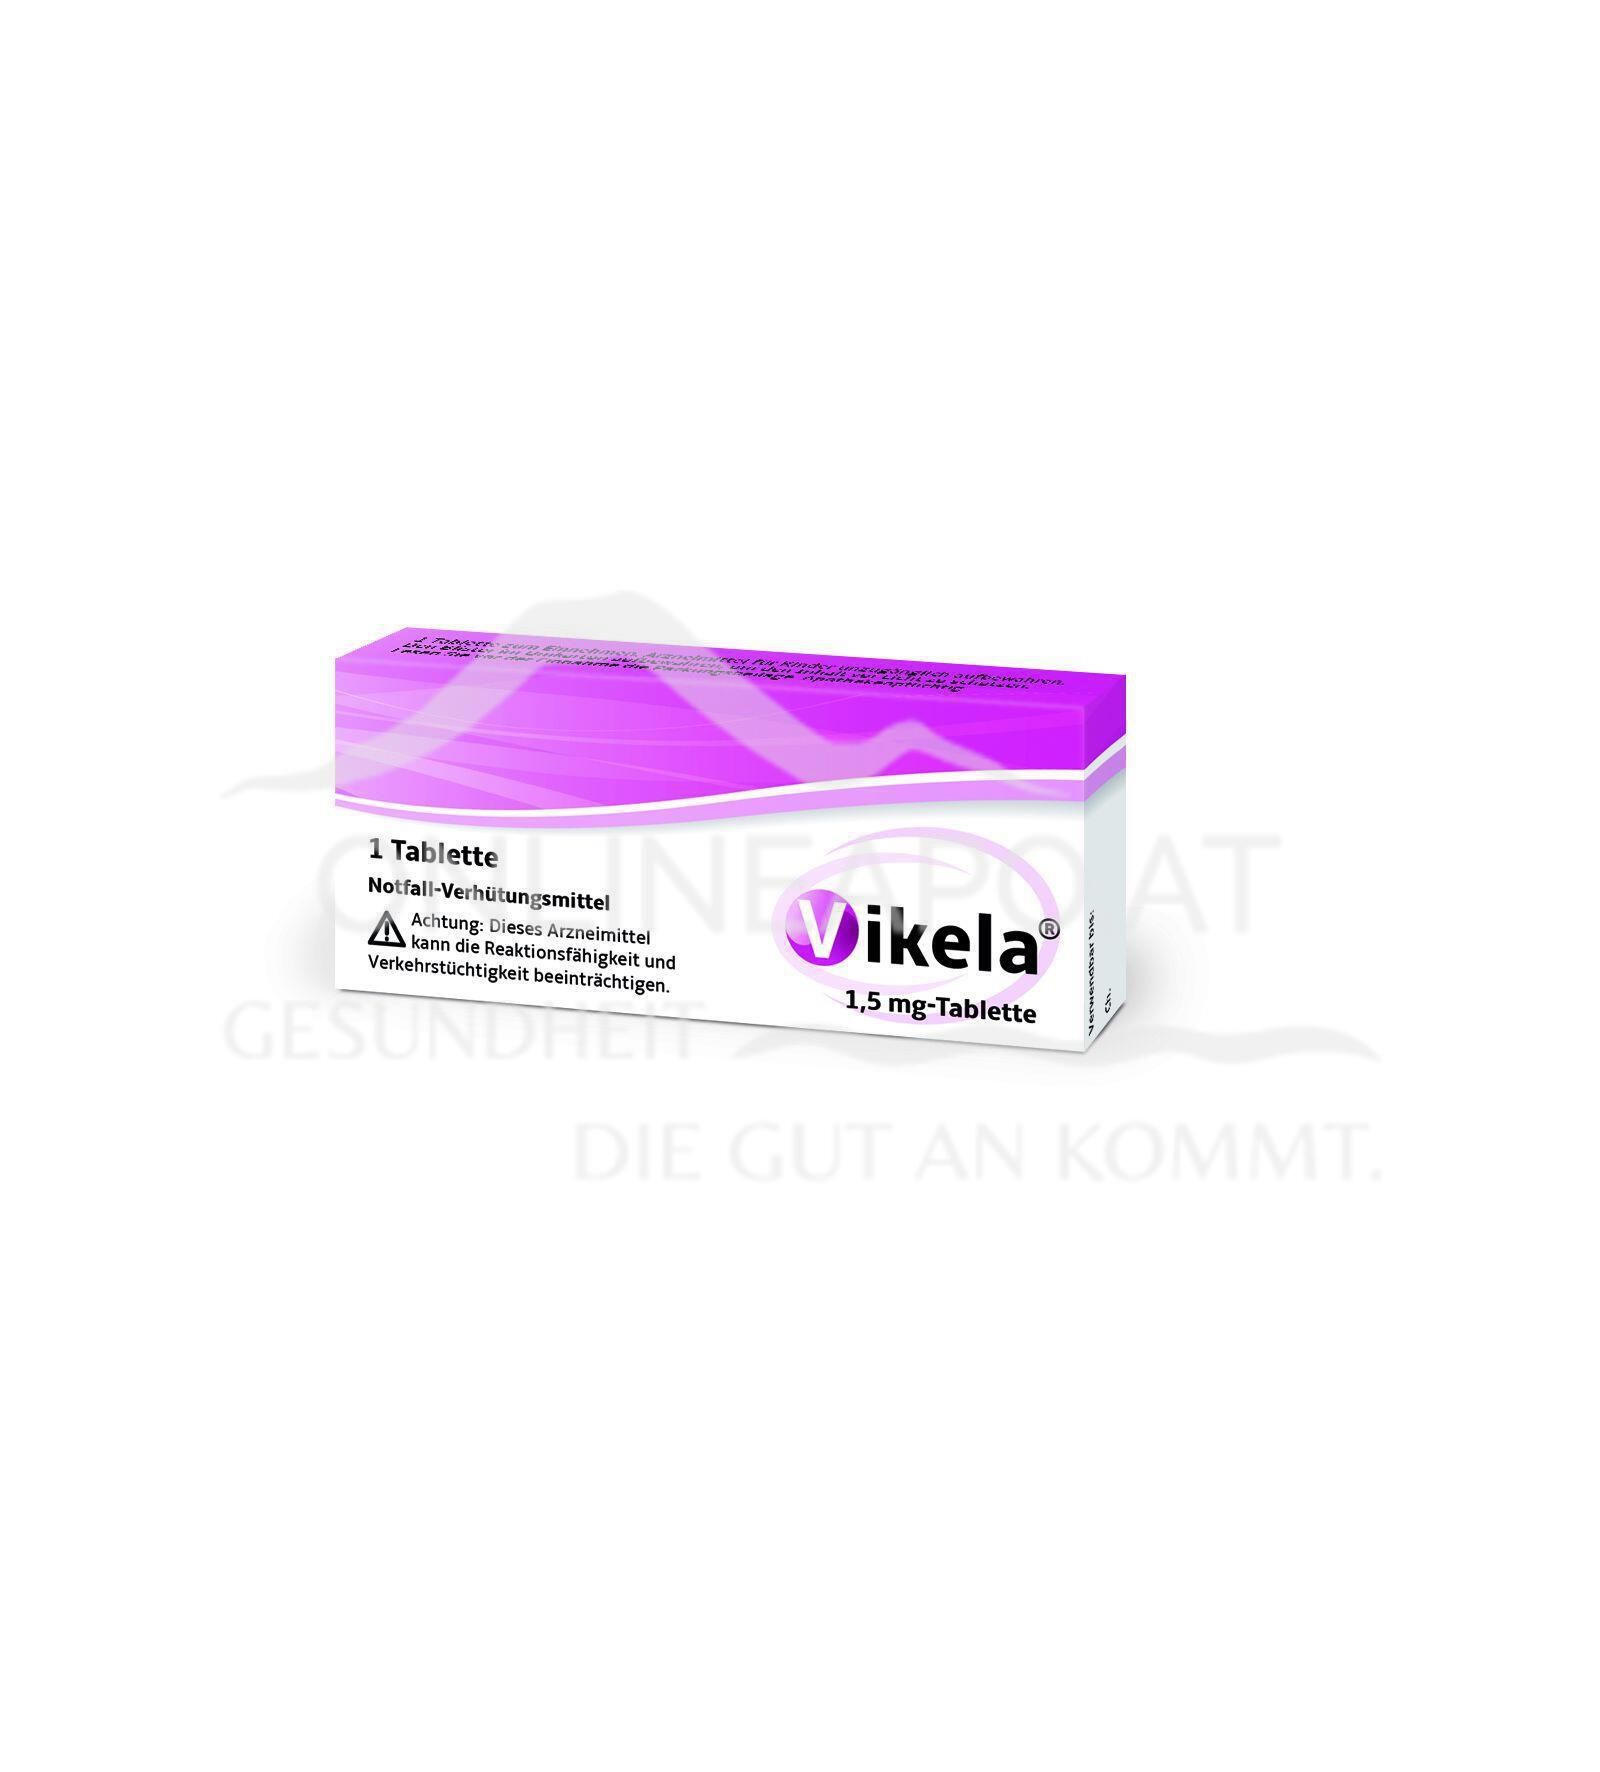 Vikela 1,5 mg Tablette